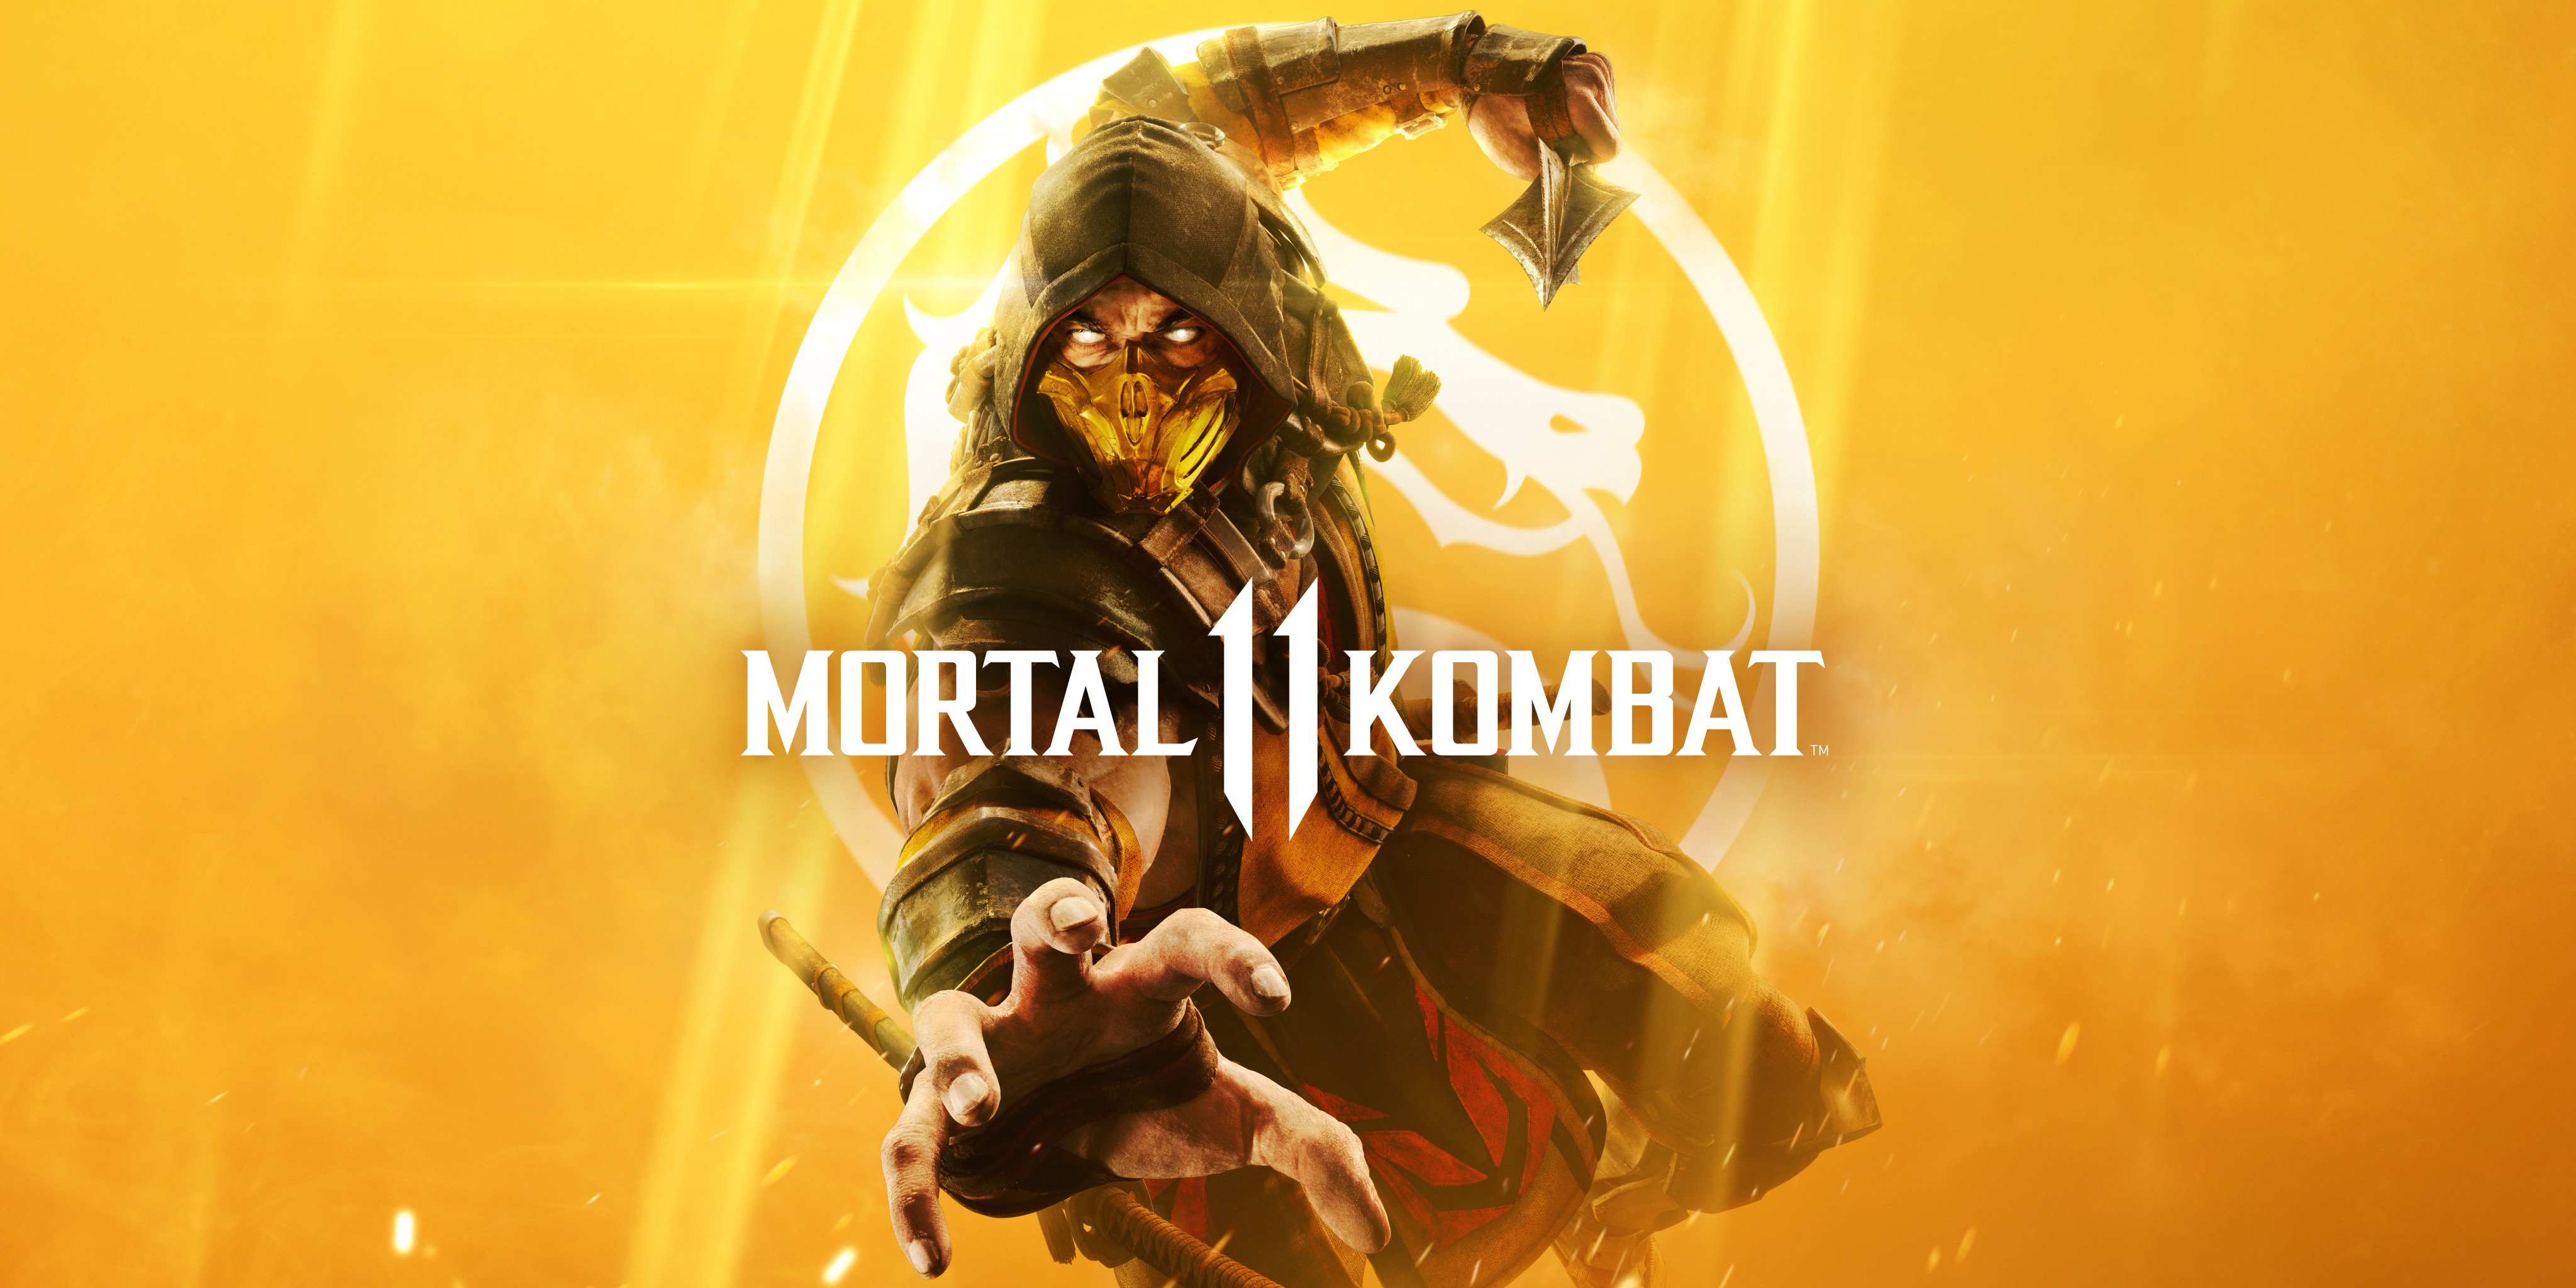 Finish Him pour Mortal Kombat 11 Le jeu n'aura pas de nouveaux DLC